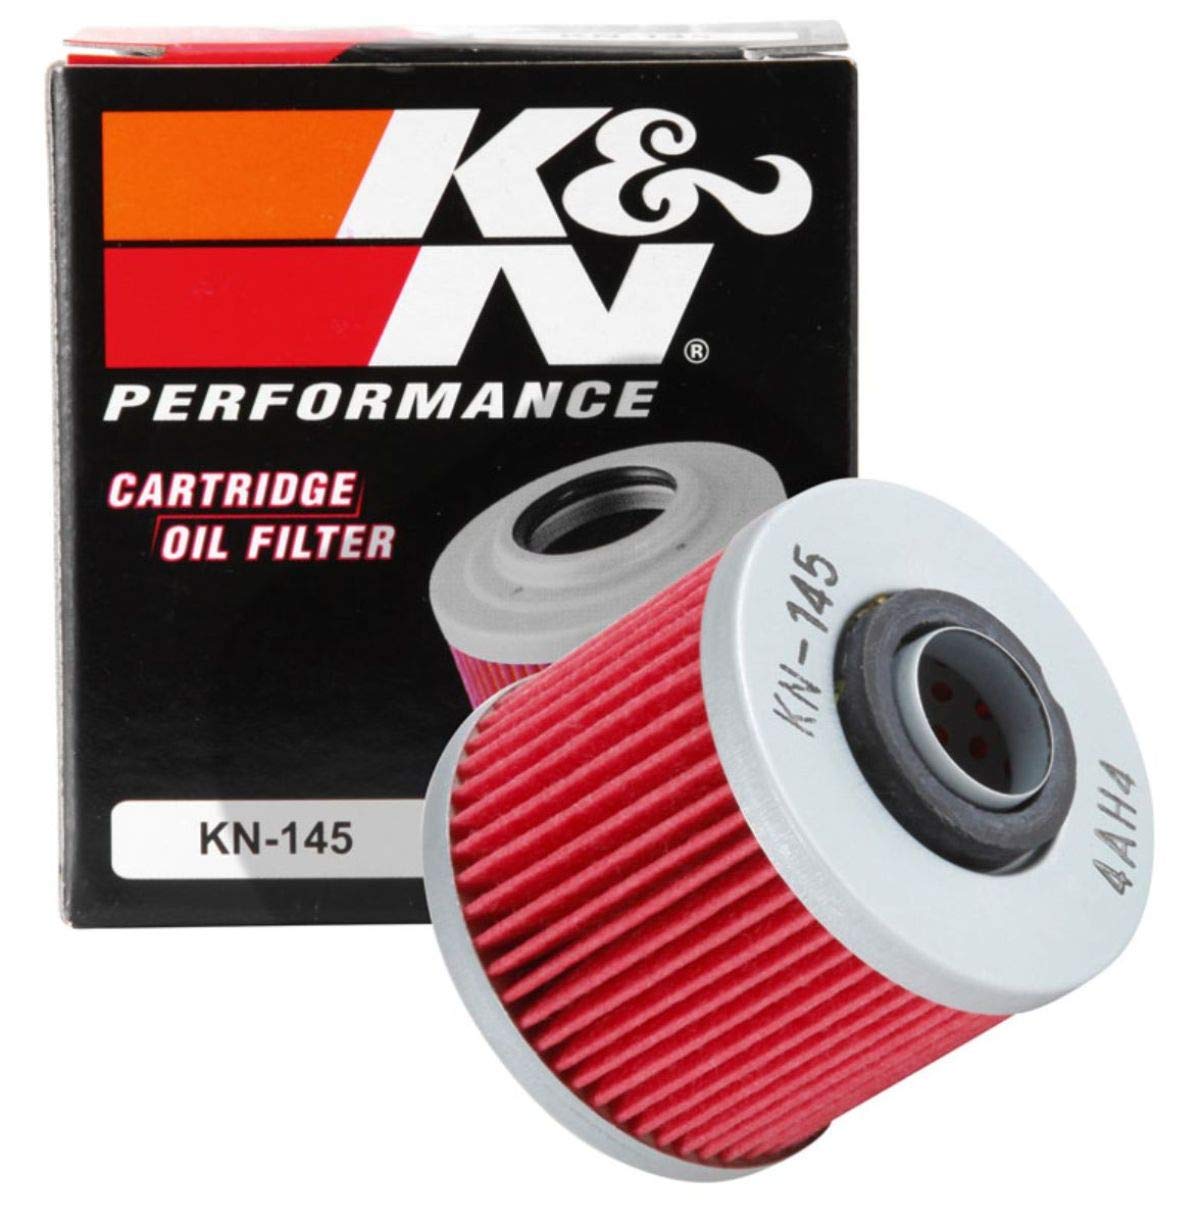 K&N Ölfilter für Motorräder: Entwickelt für die Verwendung mit synthetischen oder konventionellen Ölen. Für ausgewählte Yamaha Motorräder, KN-145 von K&N